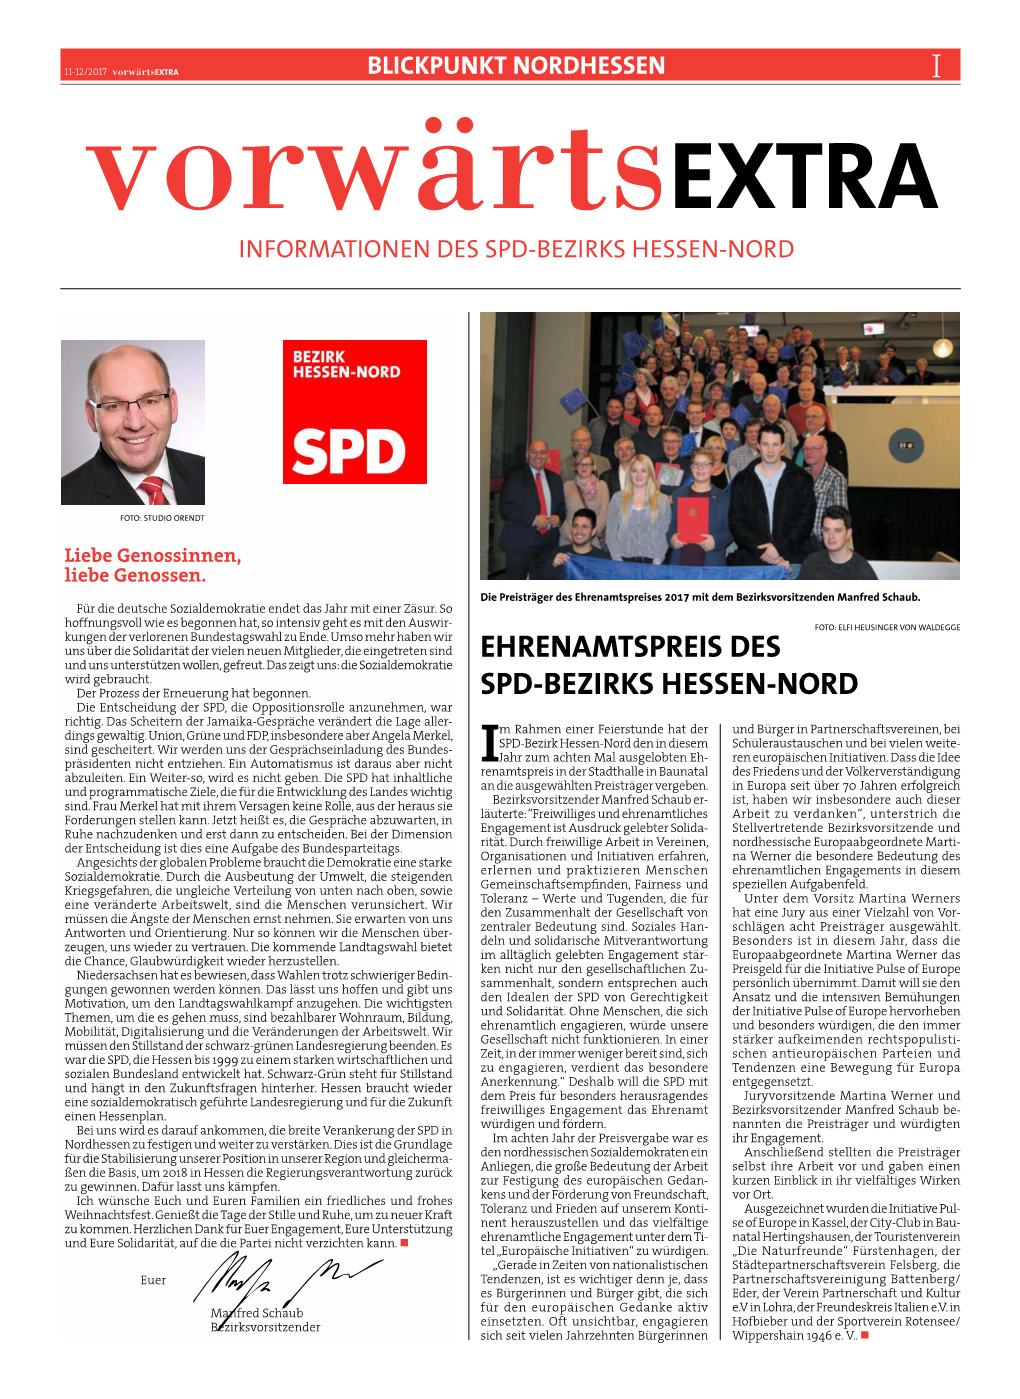 Ehrenamtspreis DES SPD-Bezirks HESSEN-NORD